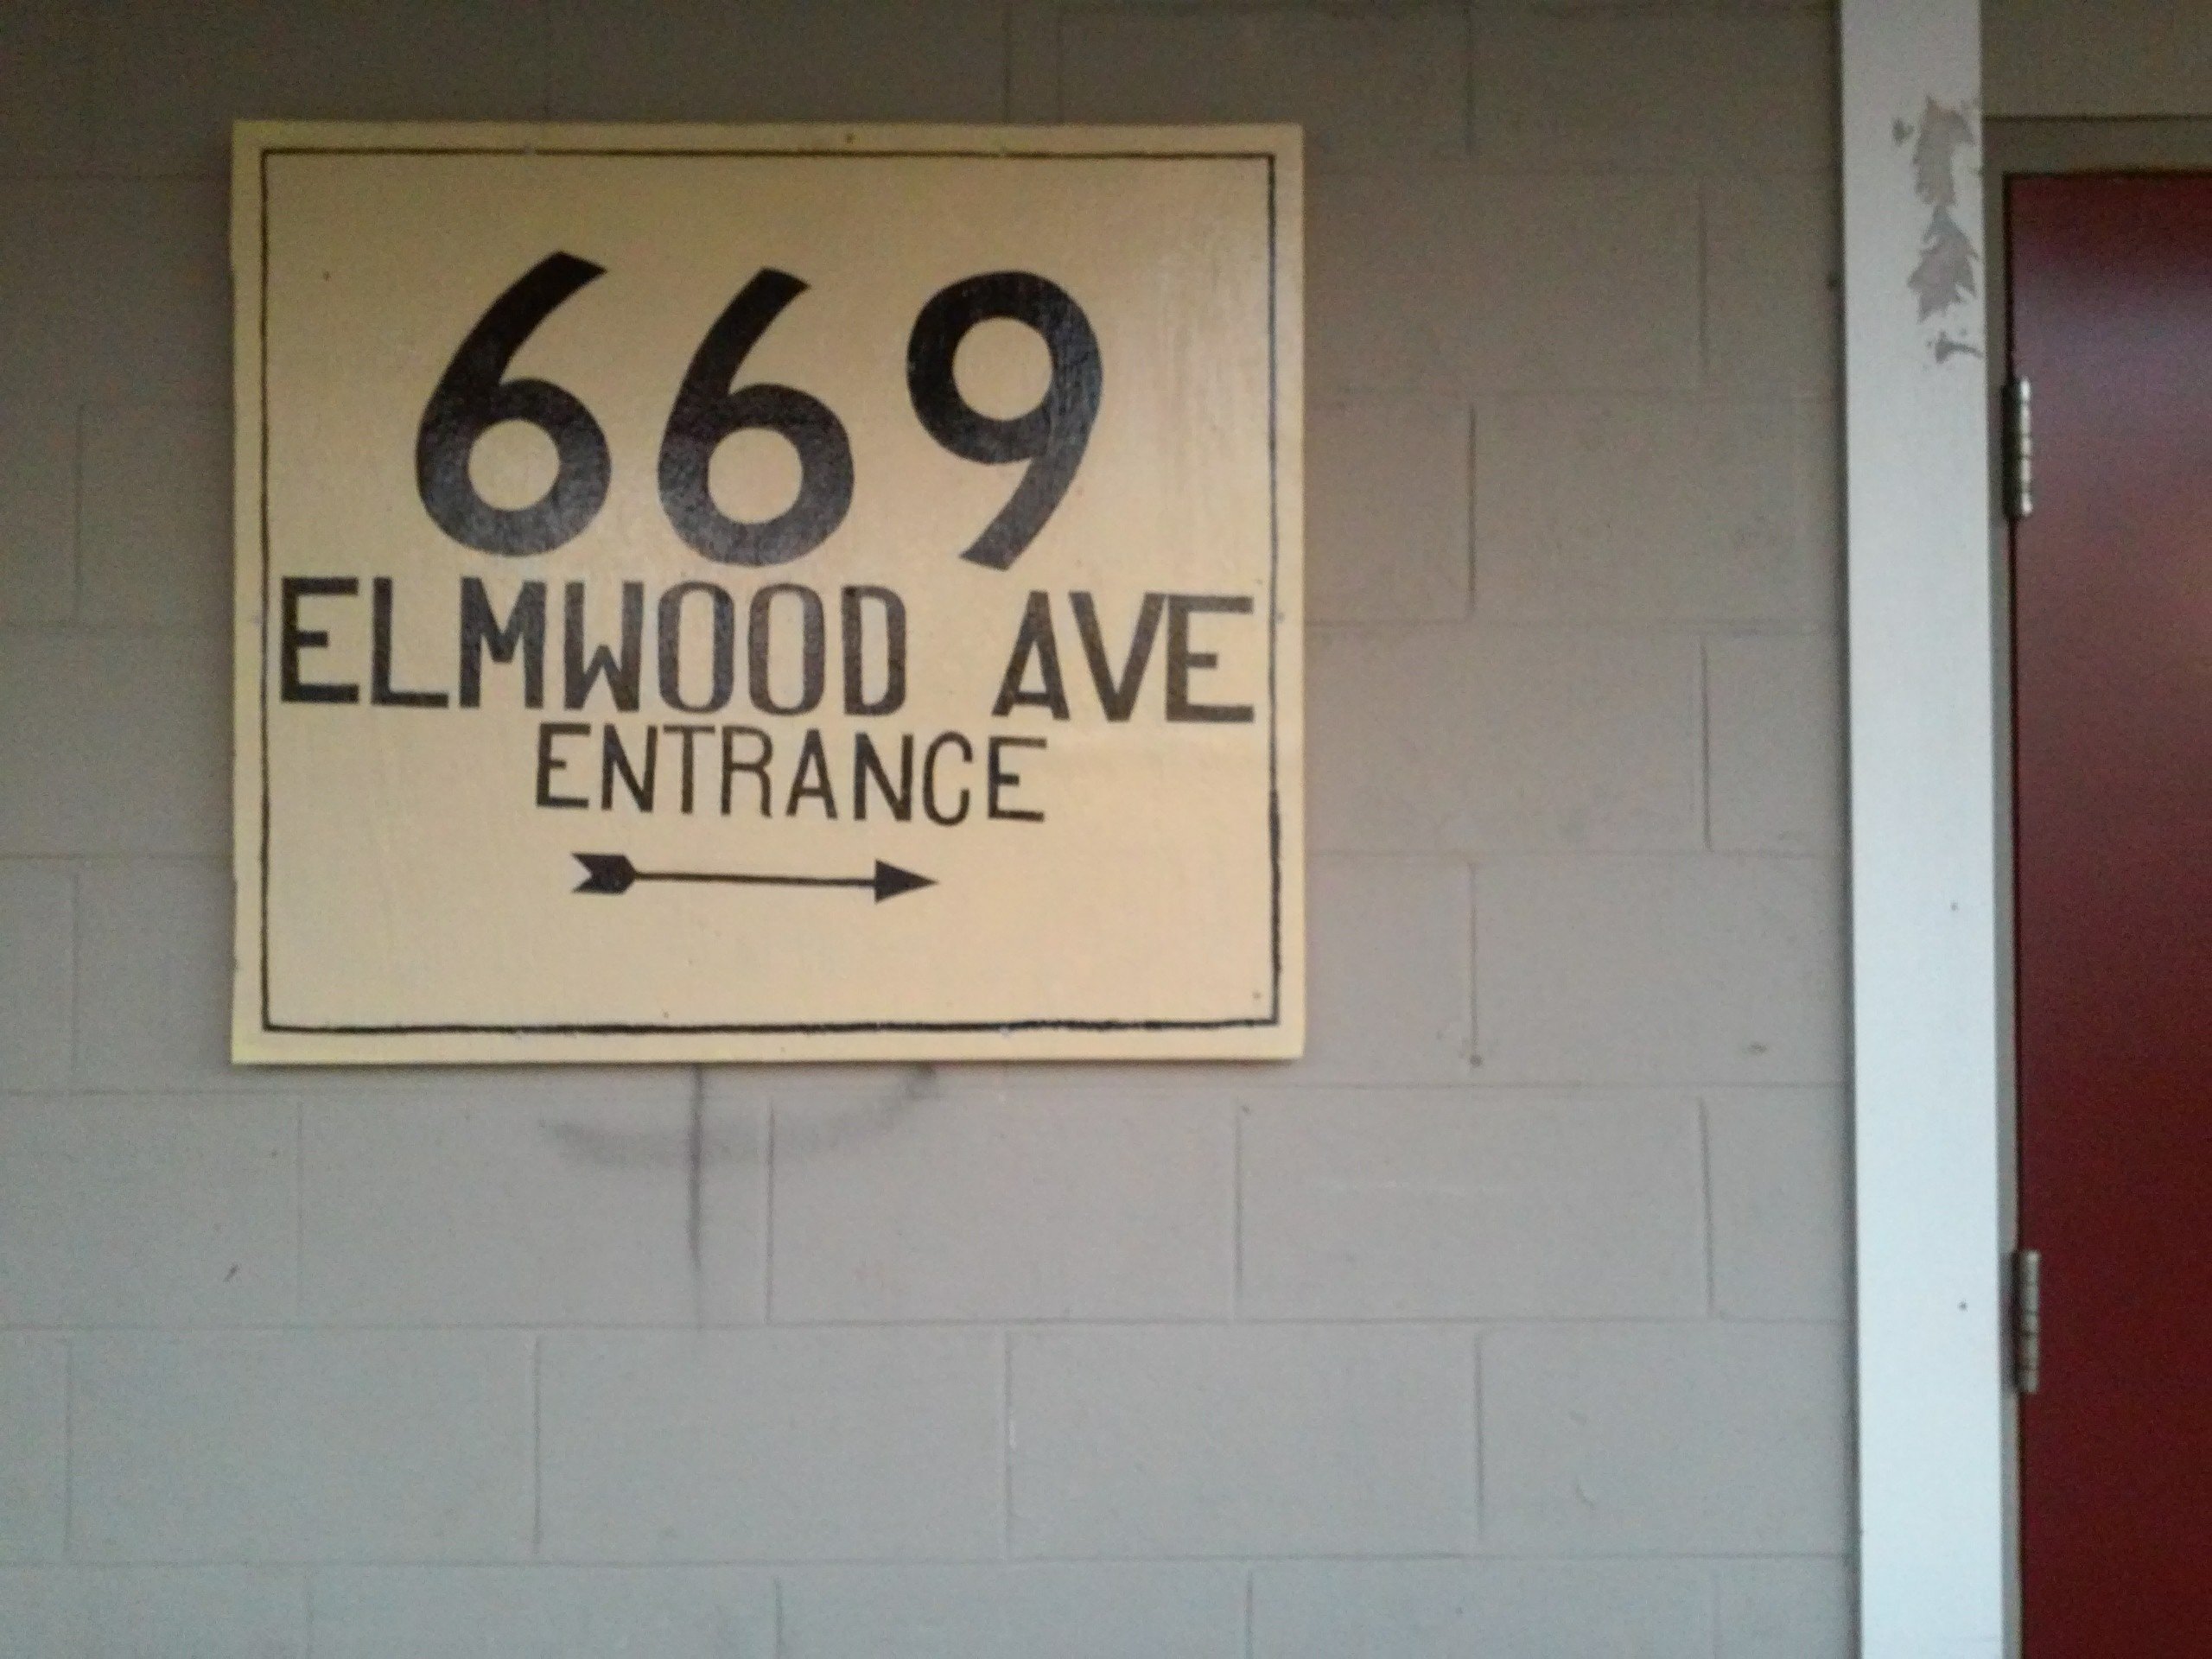 669 Elmwood Ave